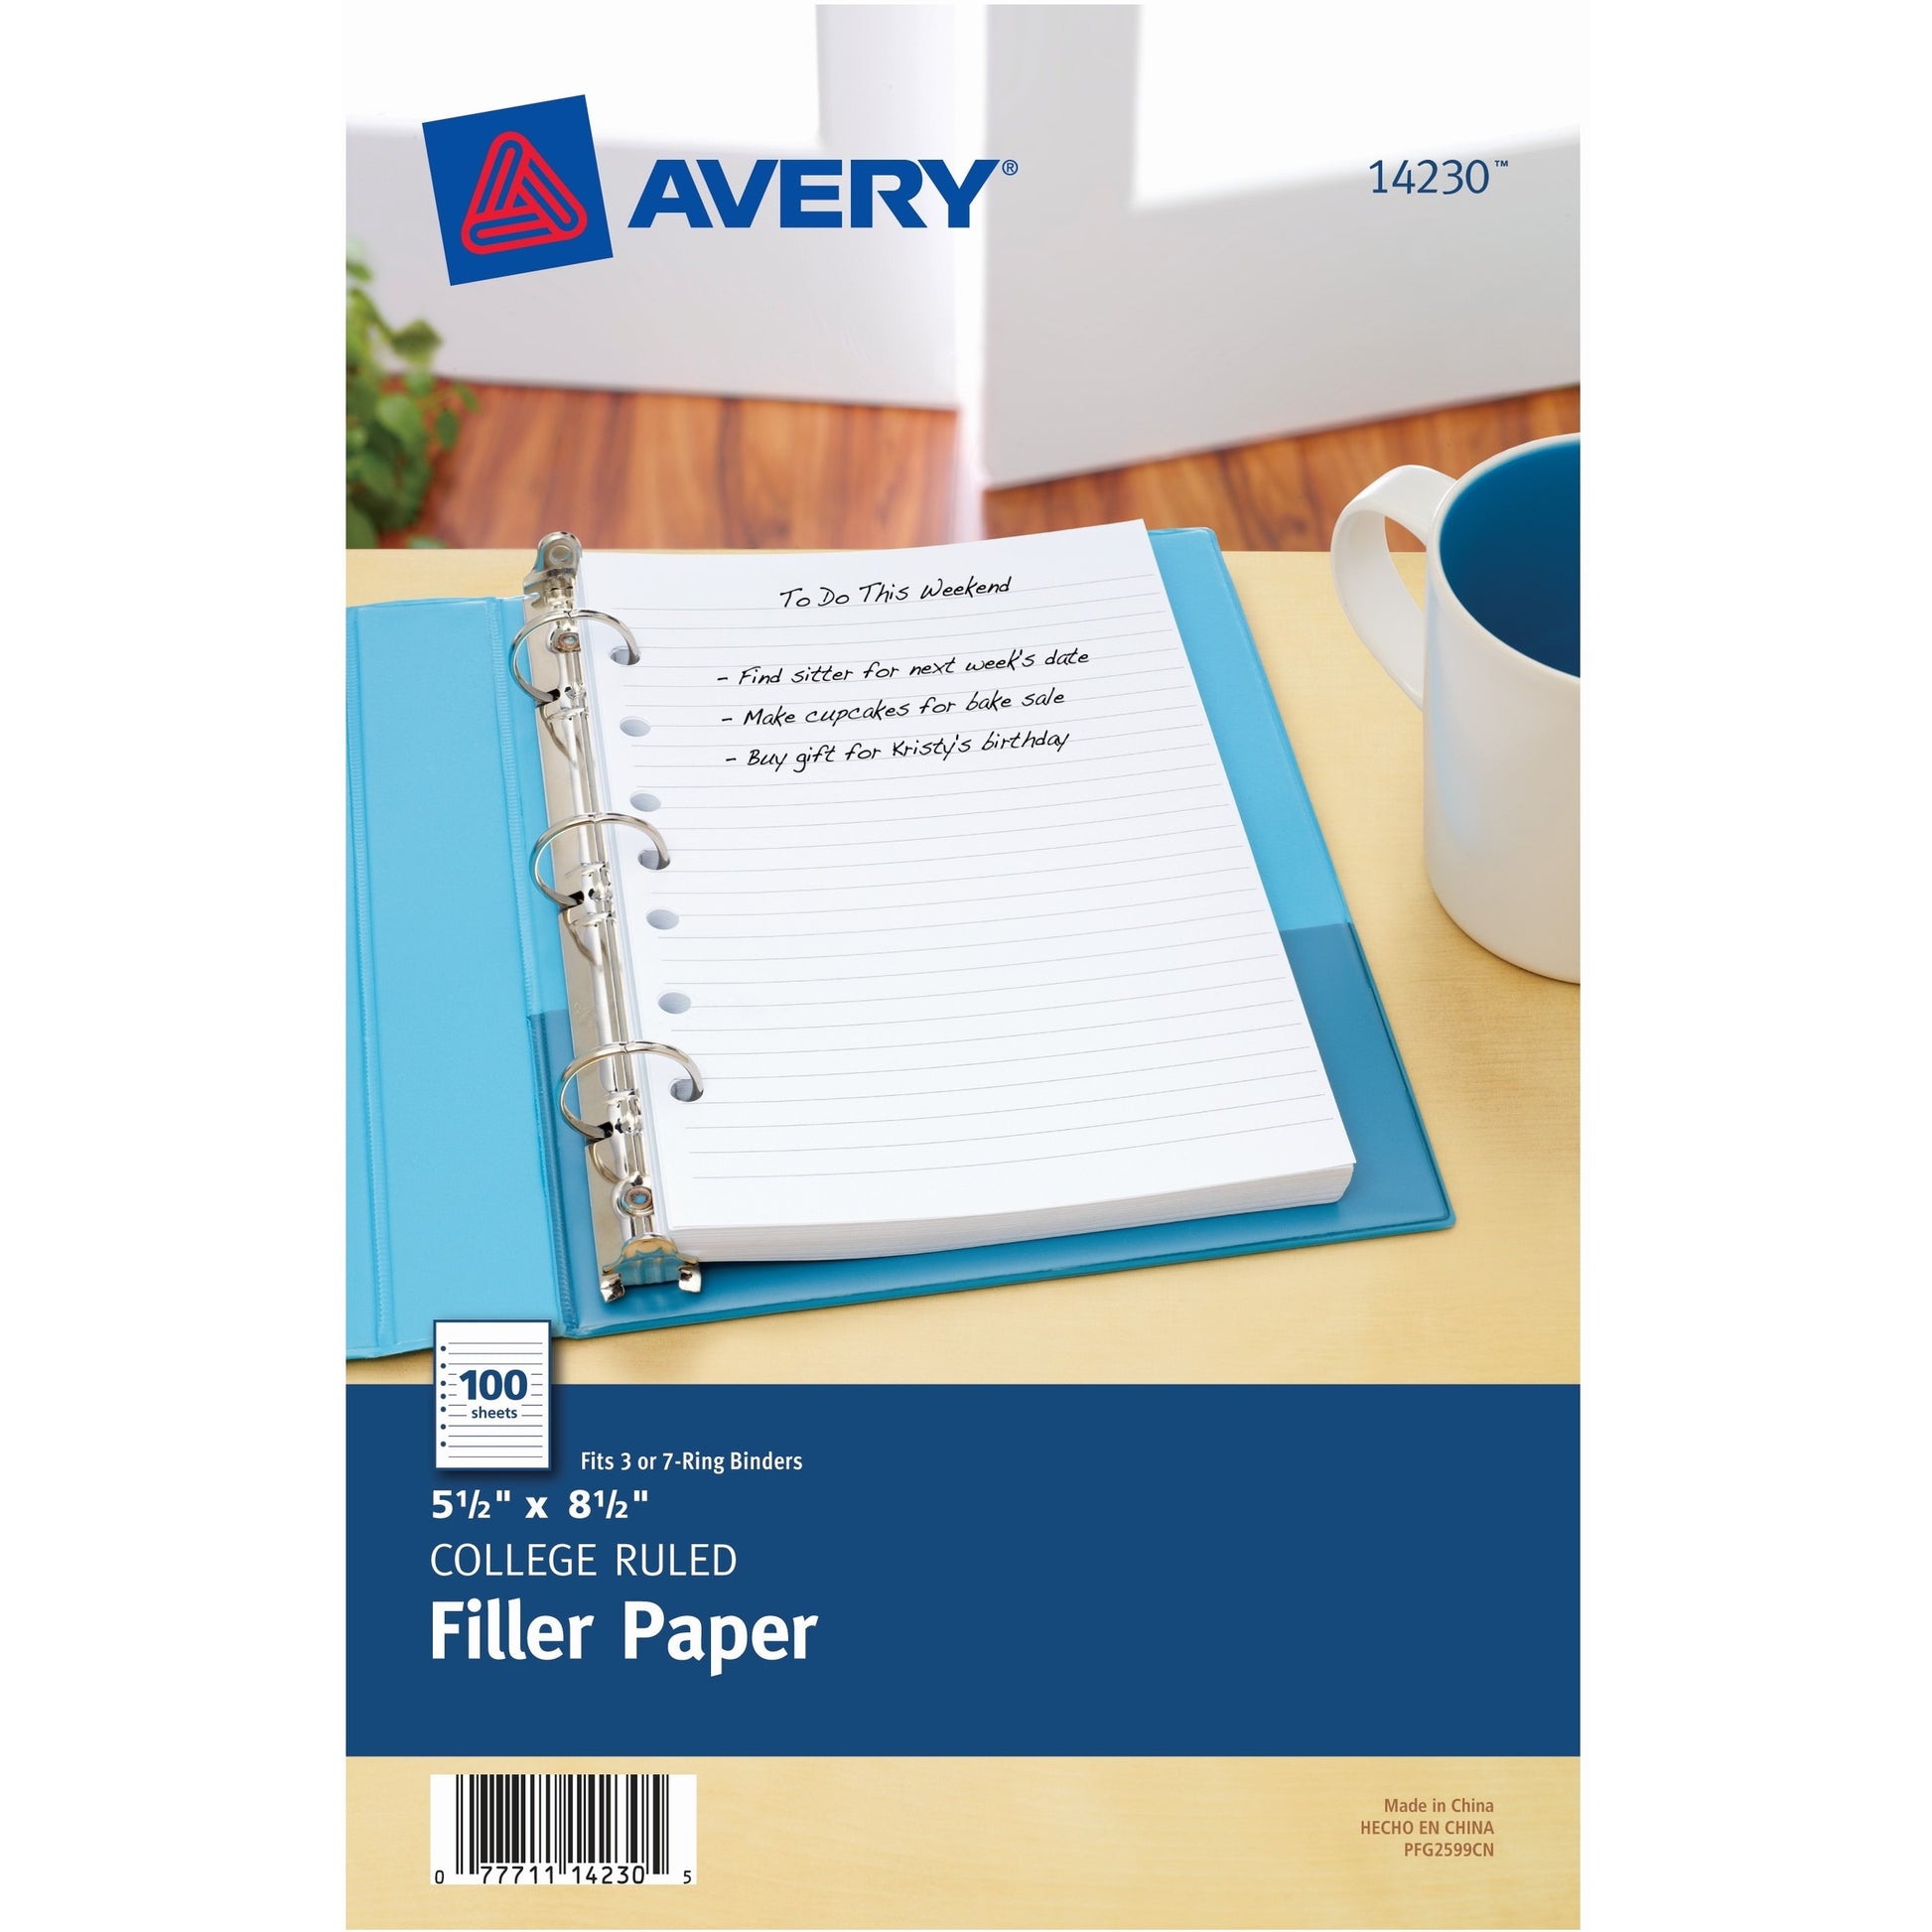 Avery&reg; Filler paper for 3-Ring/7-Ring Mini Binders